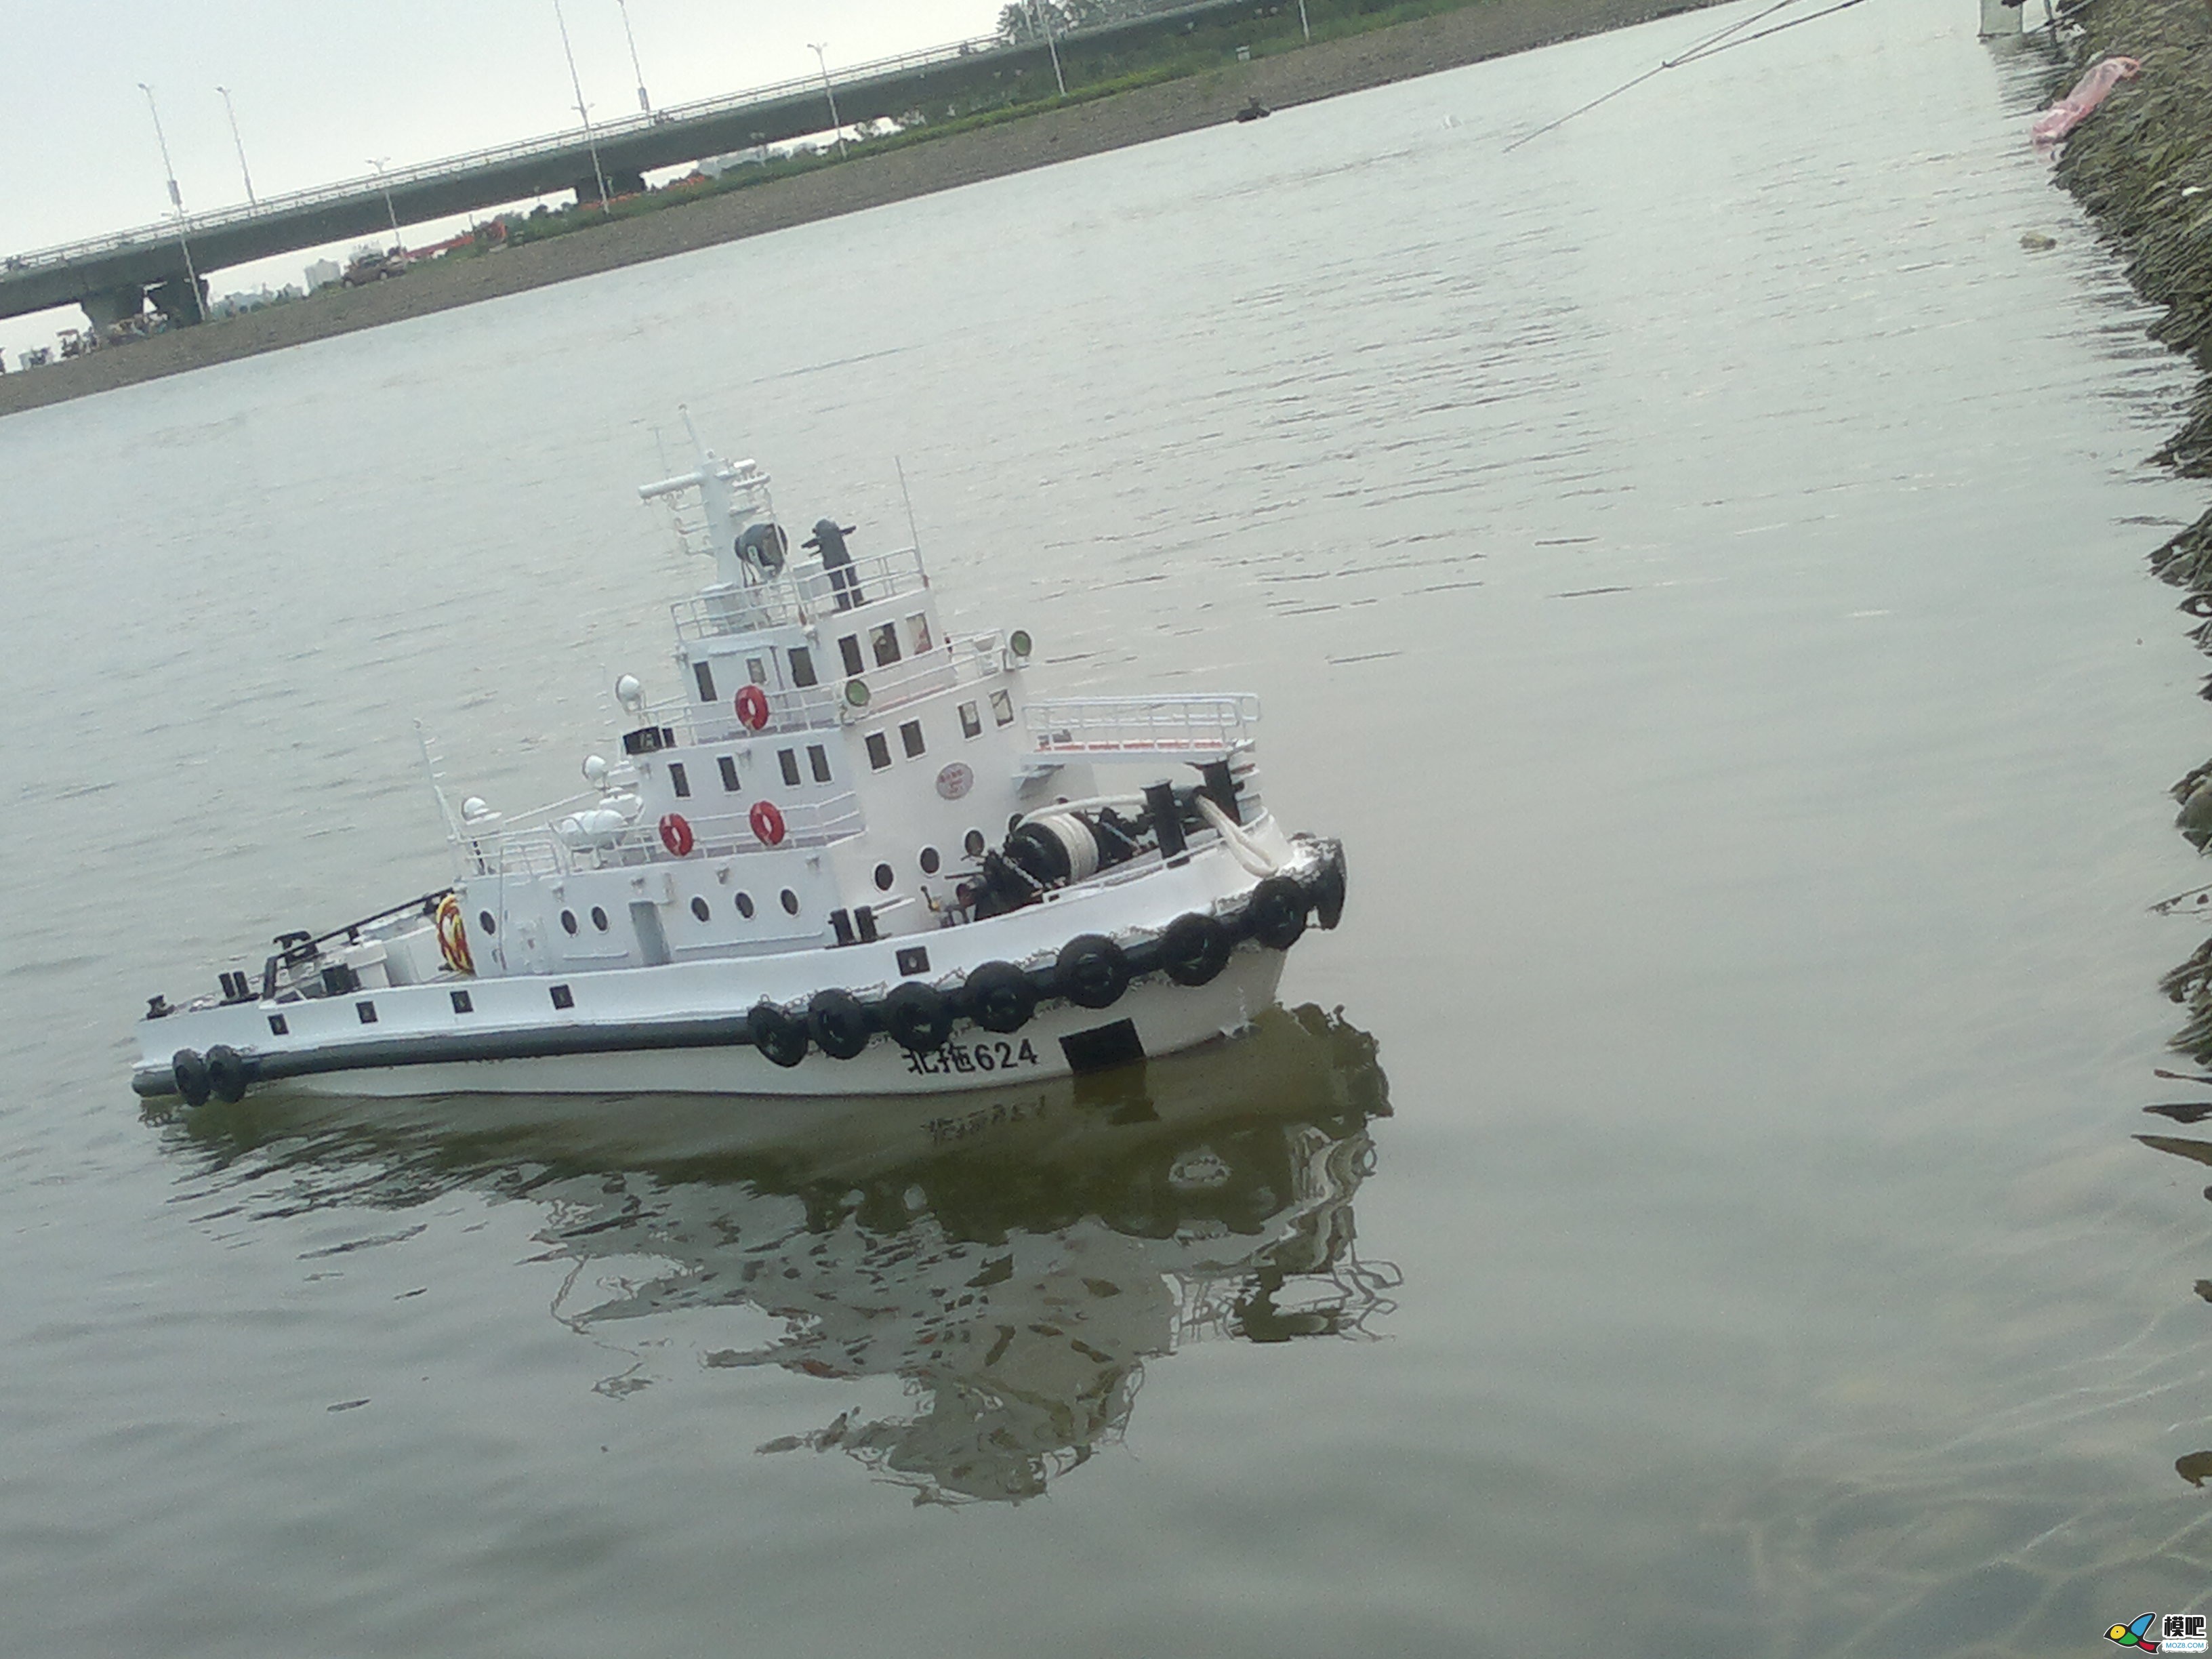 因为怀念所以制作，海军拖船制作小记 海军小型拖船,中国海军拖船,海军布缆船 作者:艇长 1042 